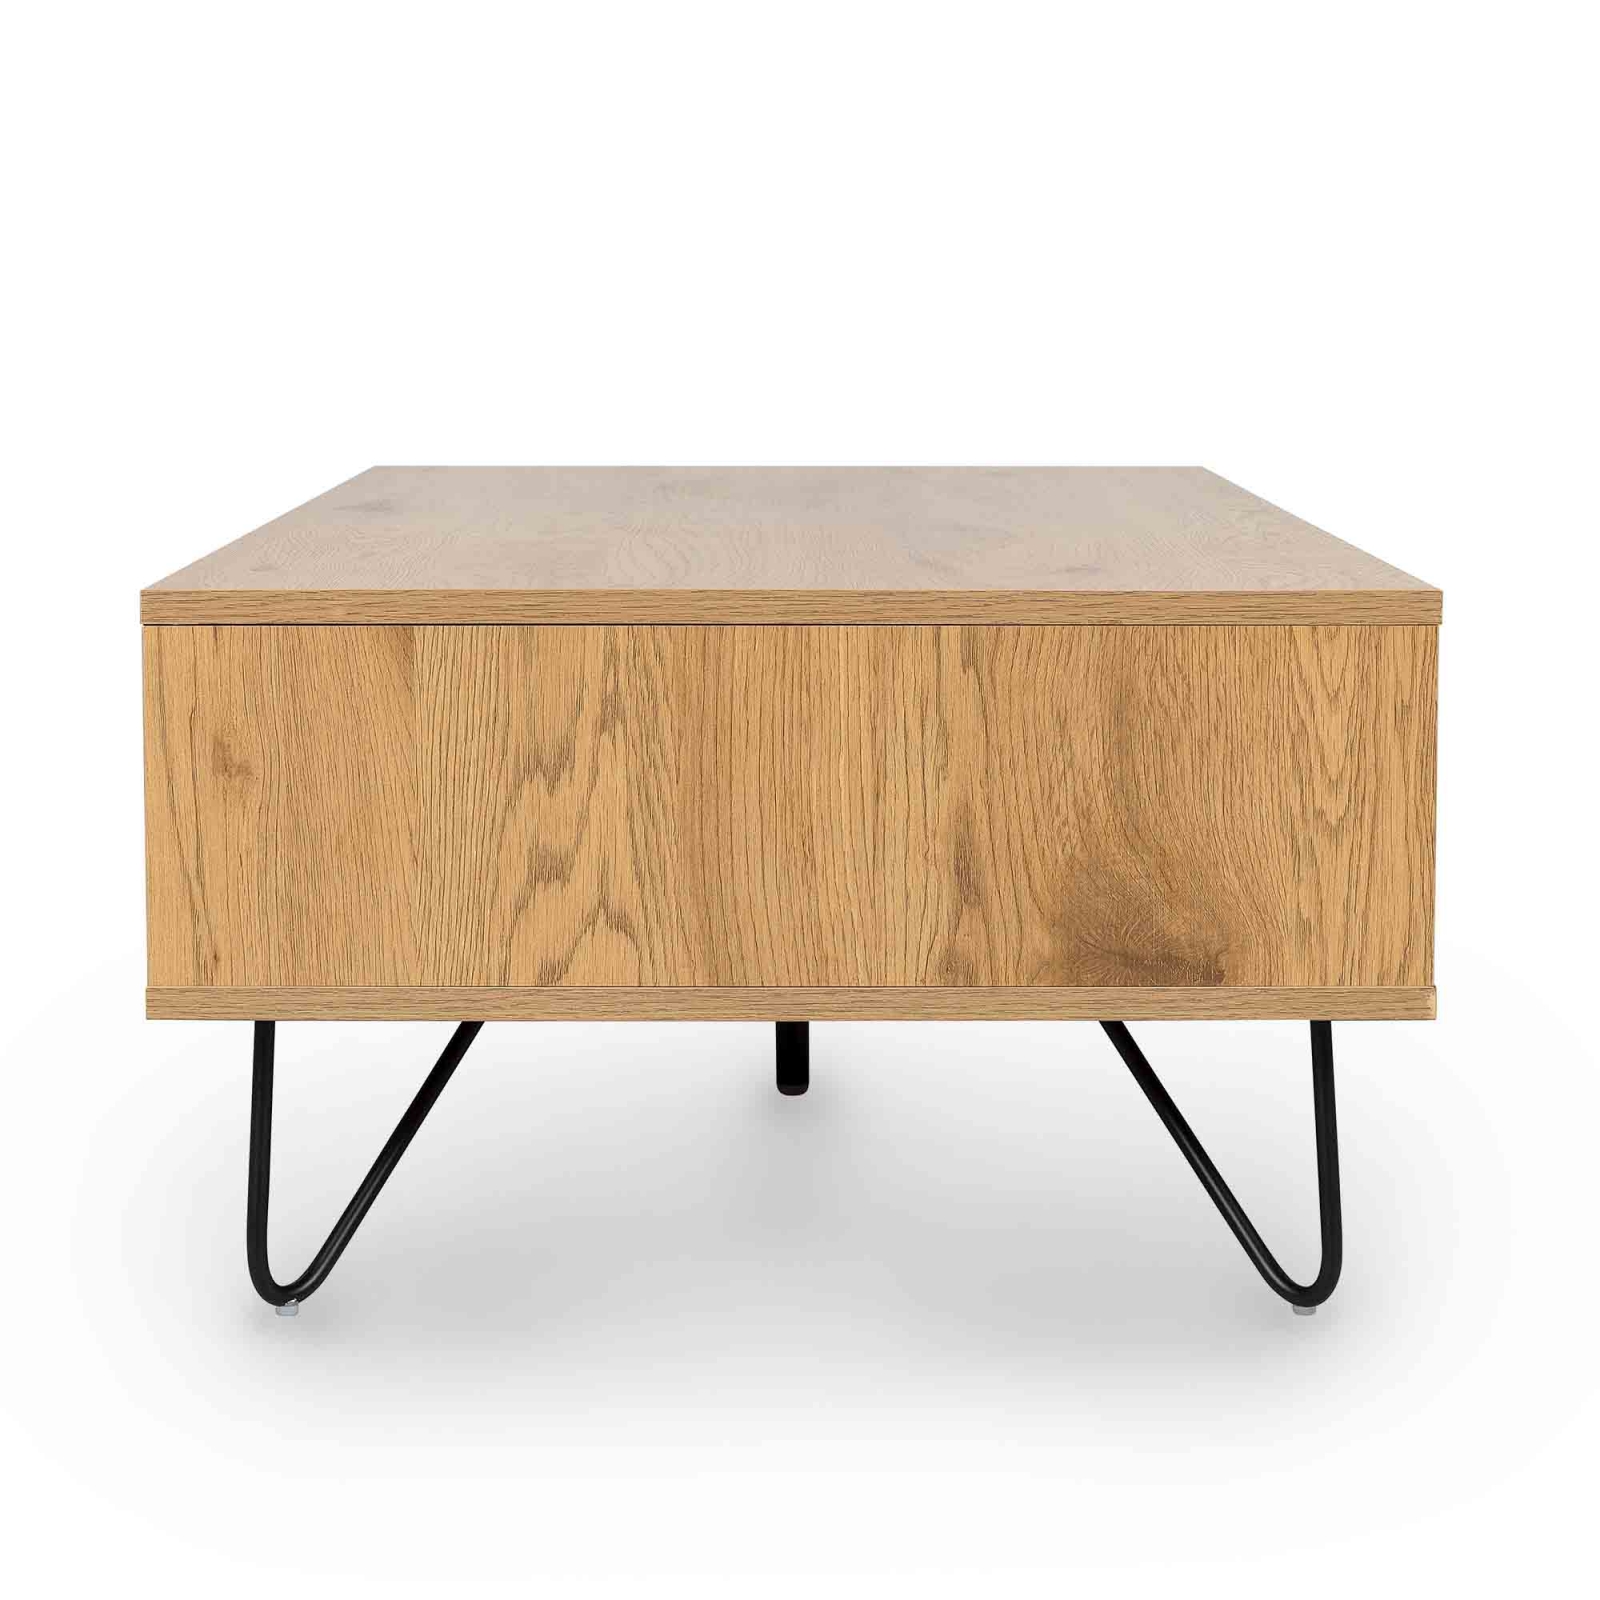 Table basse en bois avec rangements